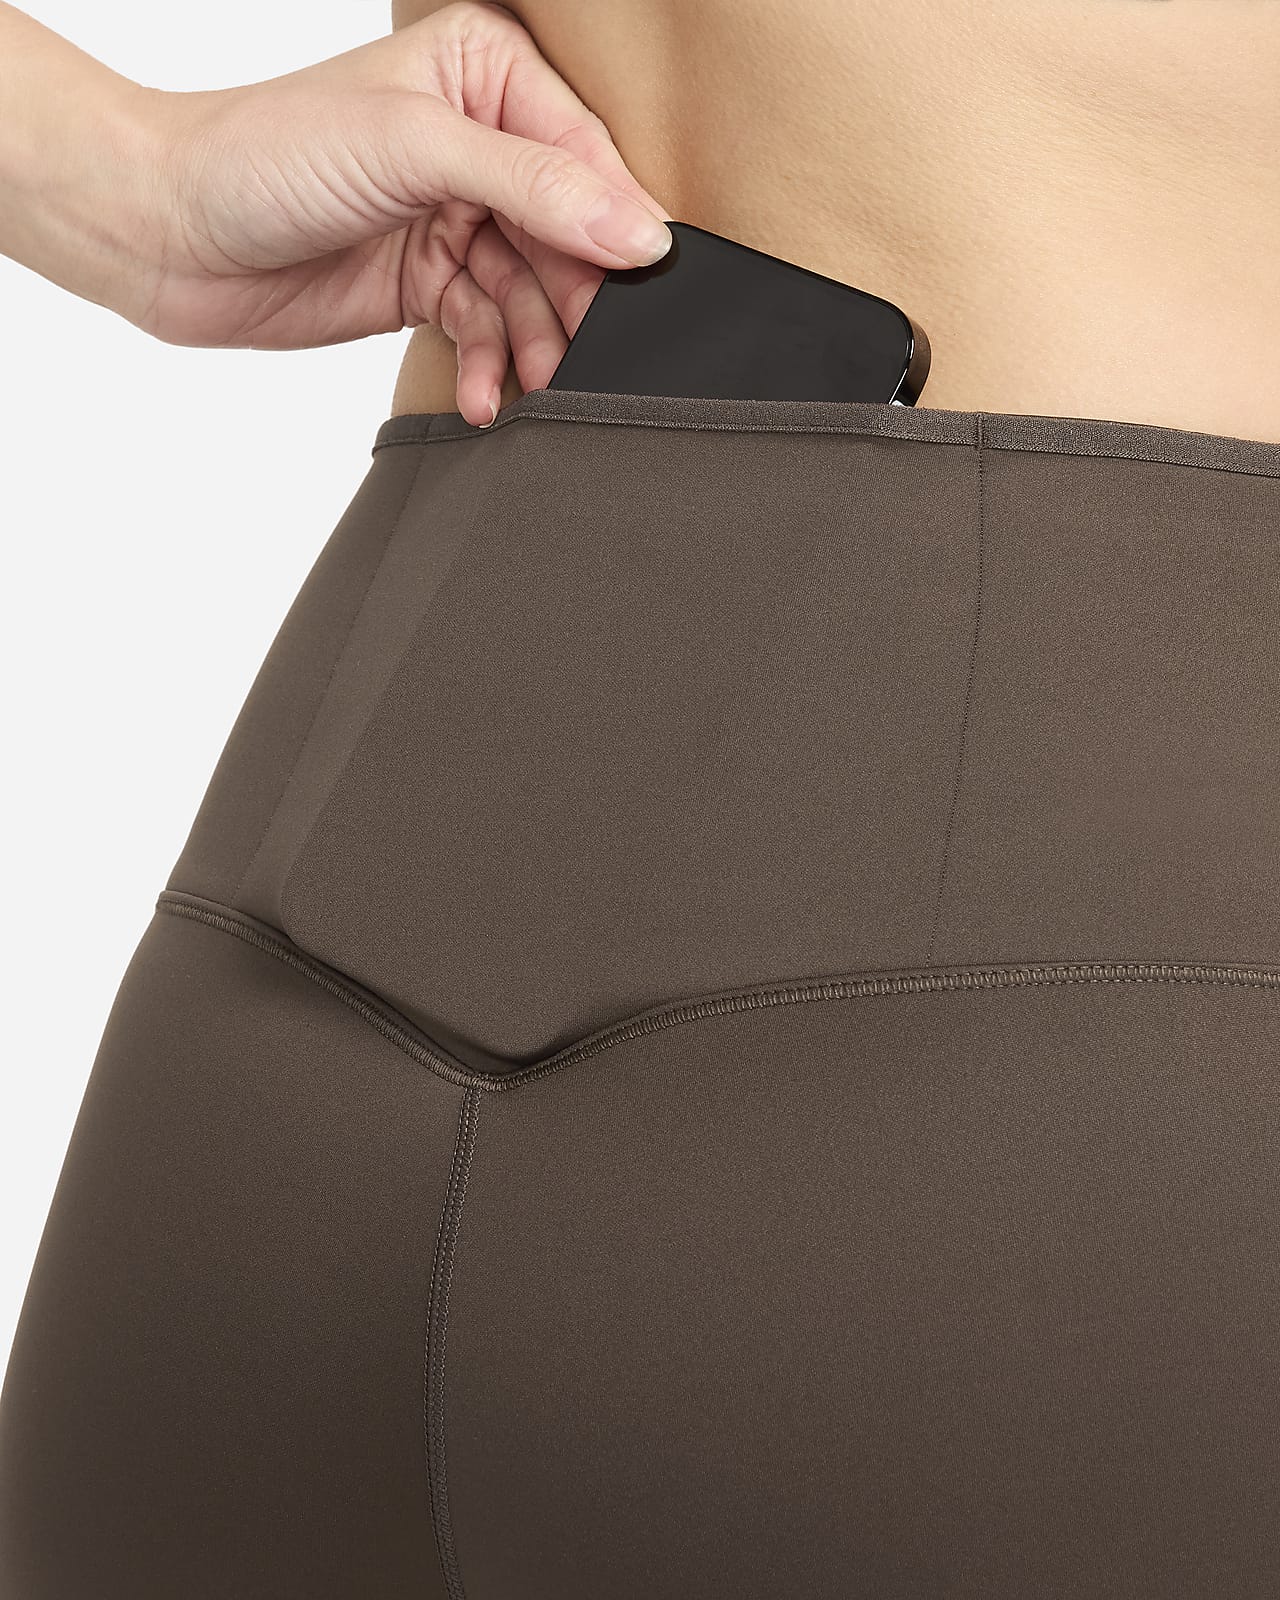 NWT lululemon align legging 25” black w/ pockets